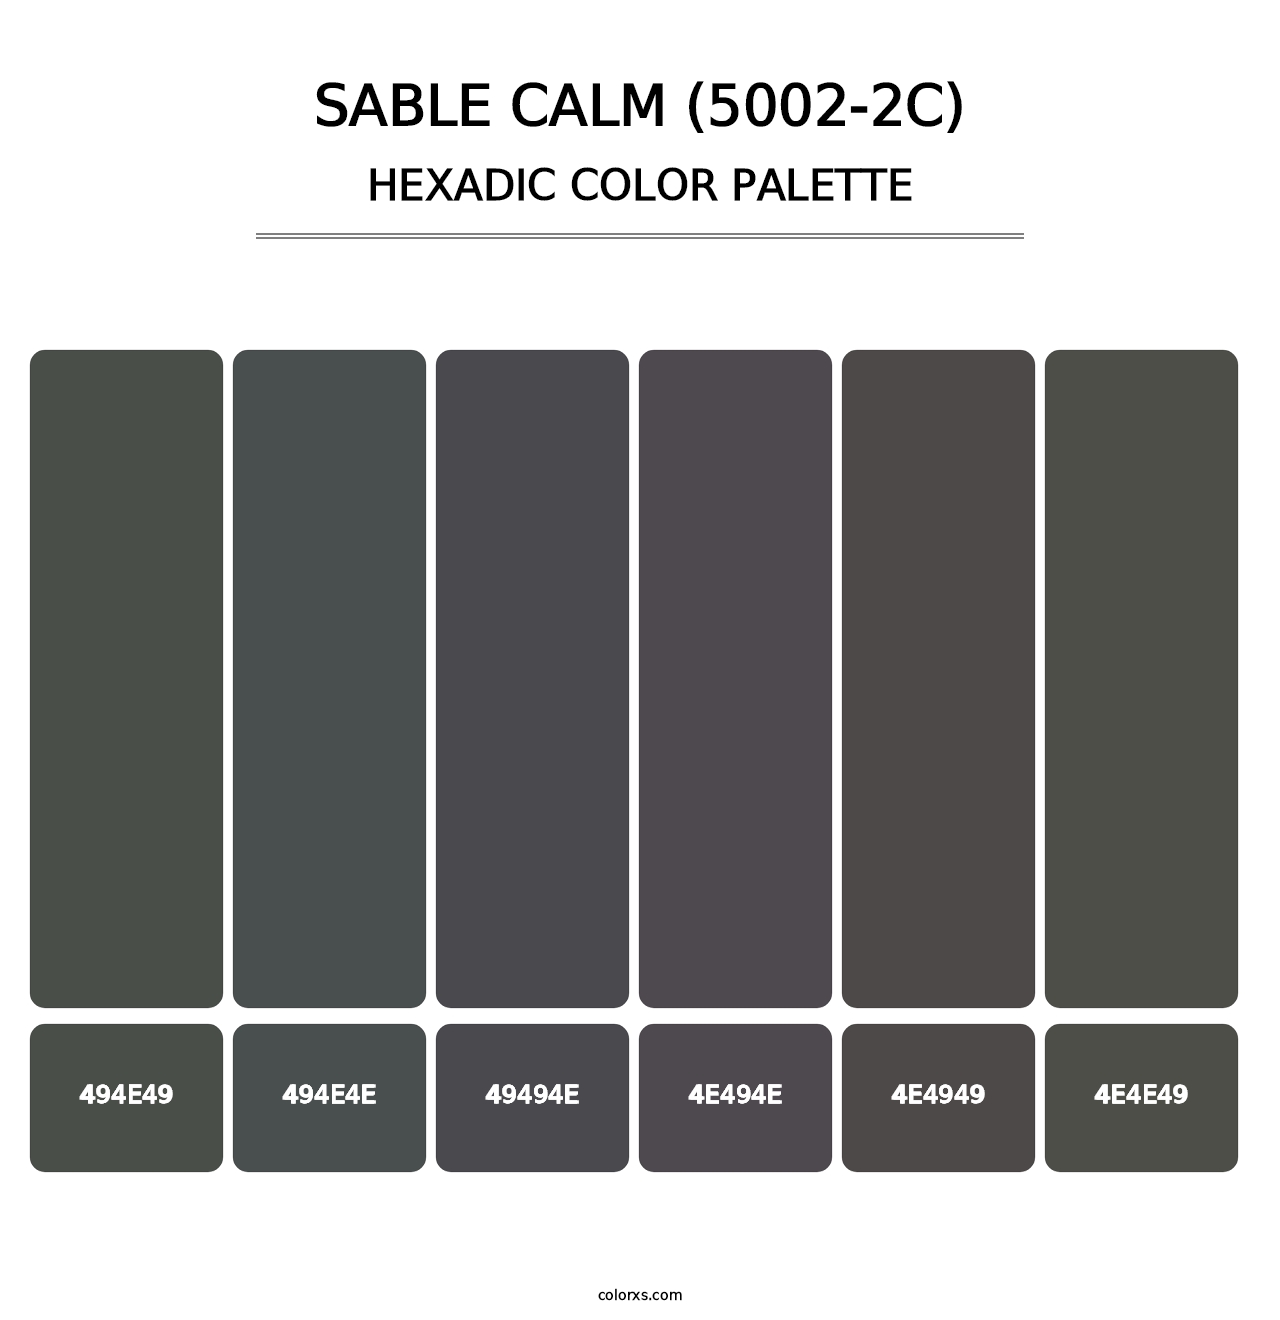 Sable Calm (5002-2C) - Hexadic Color Palette